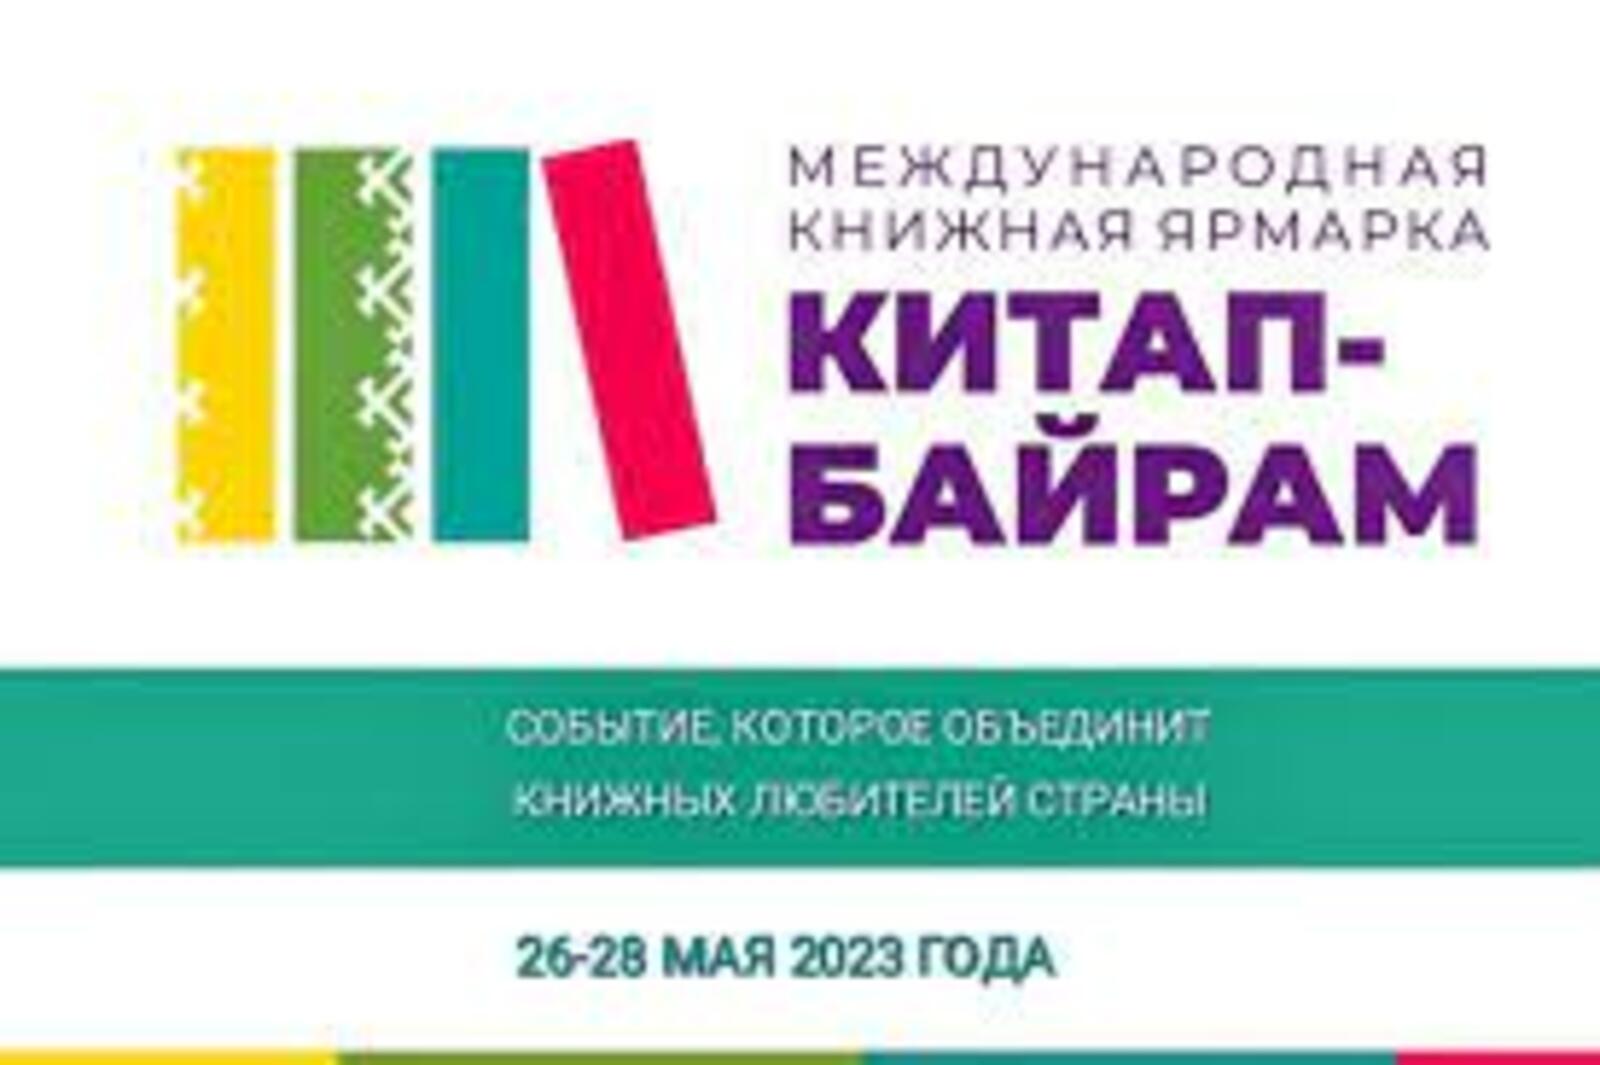 Международная книжная ярмарка "Китап-байрам" продолжается